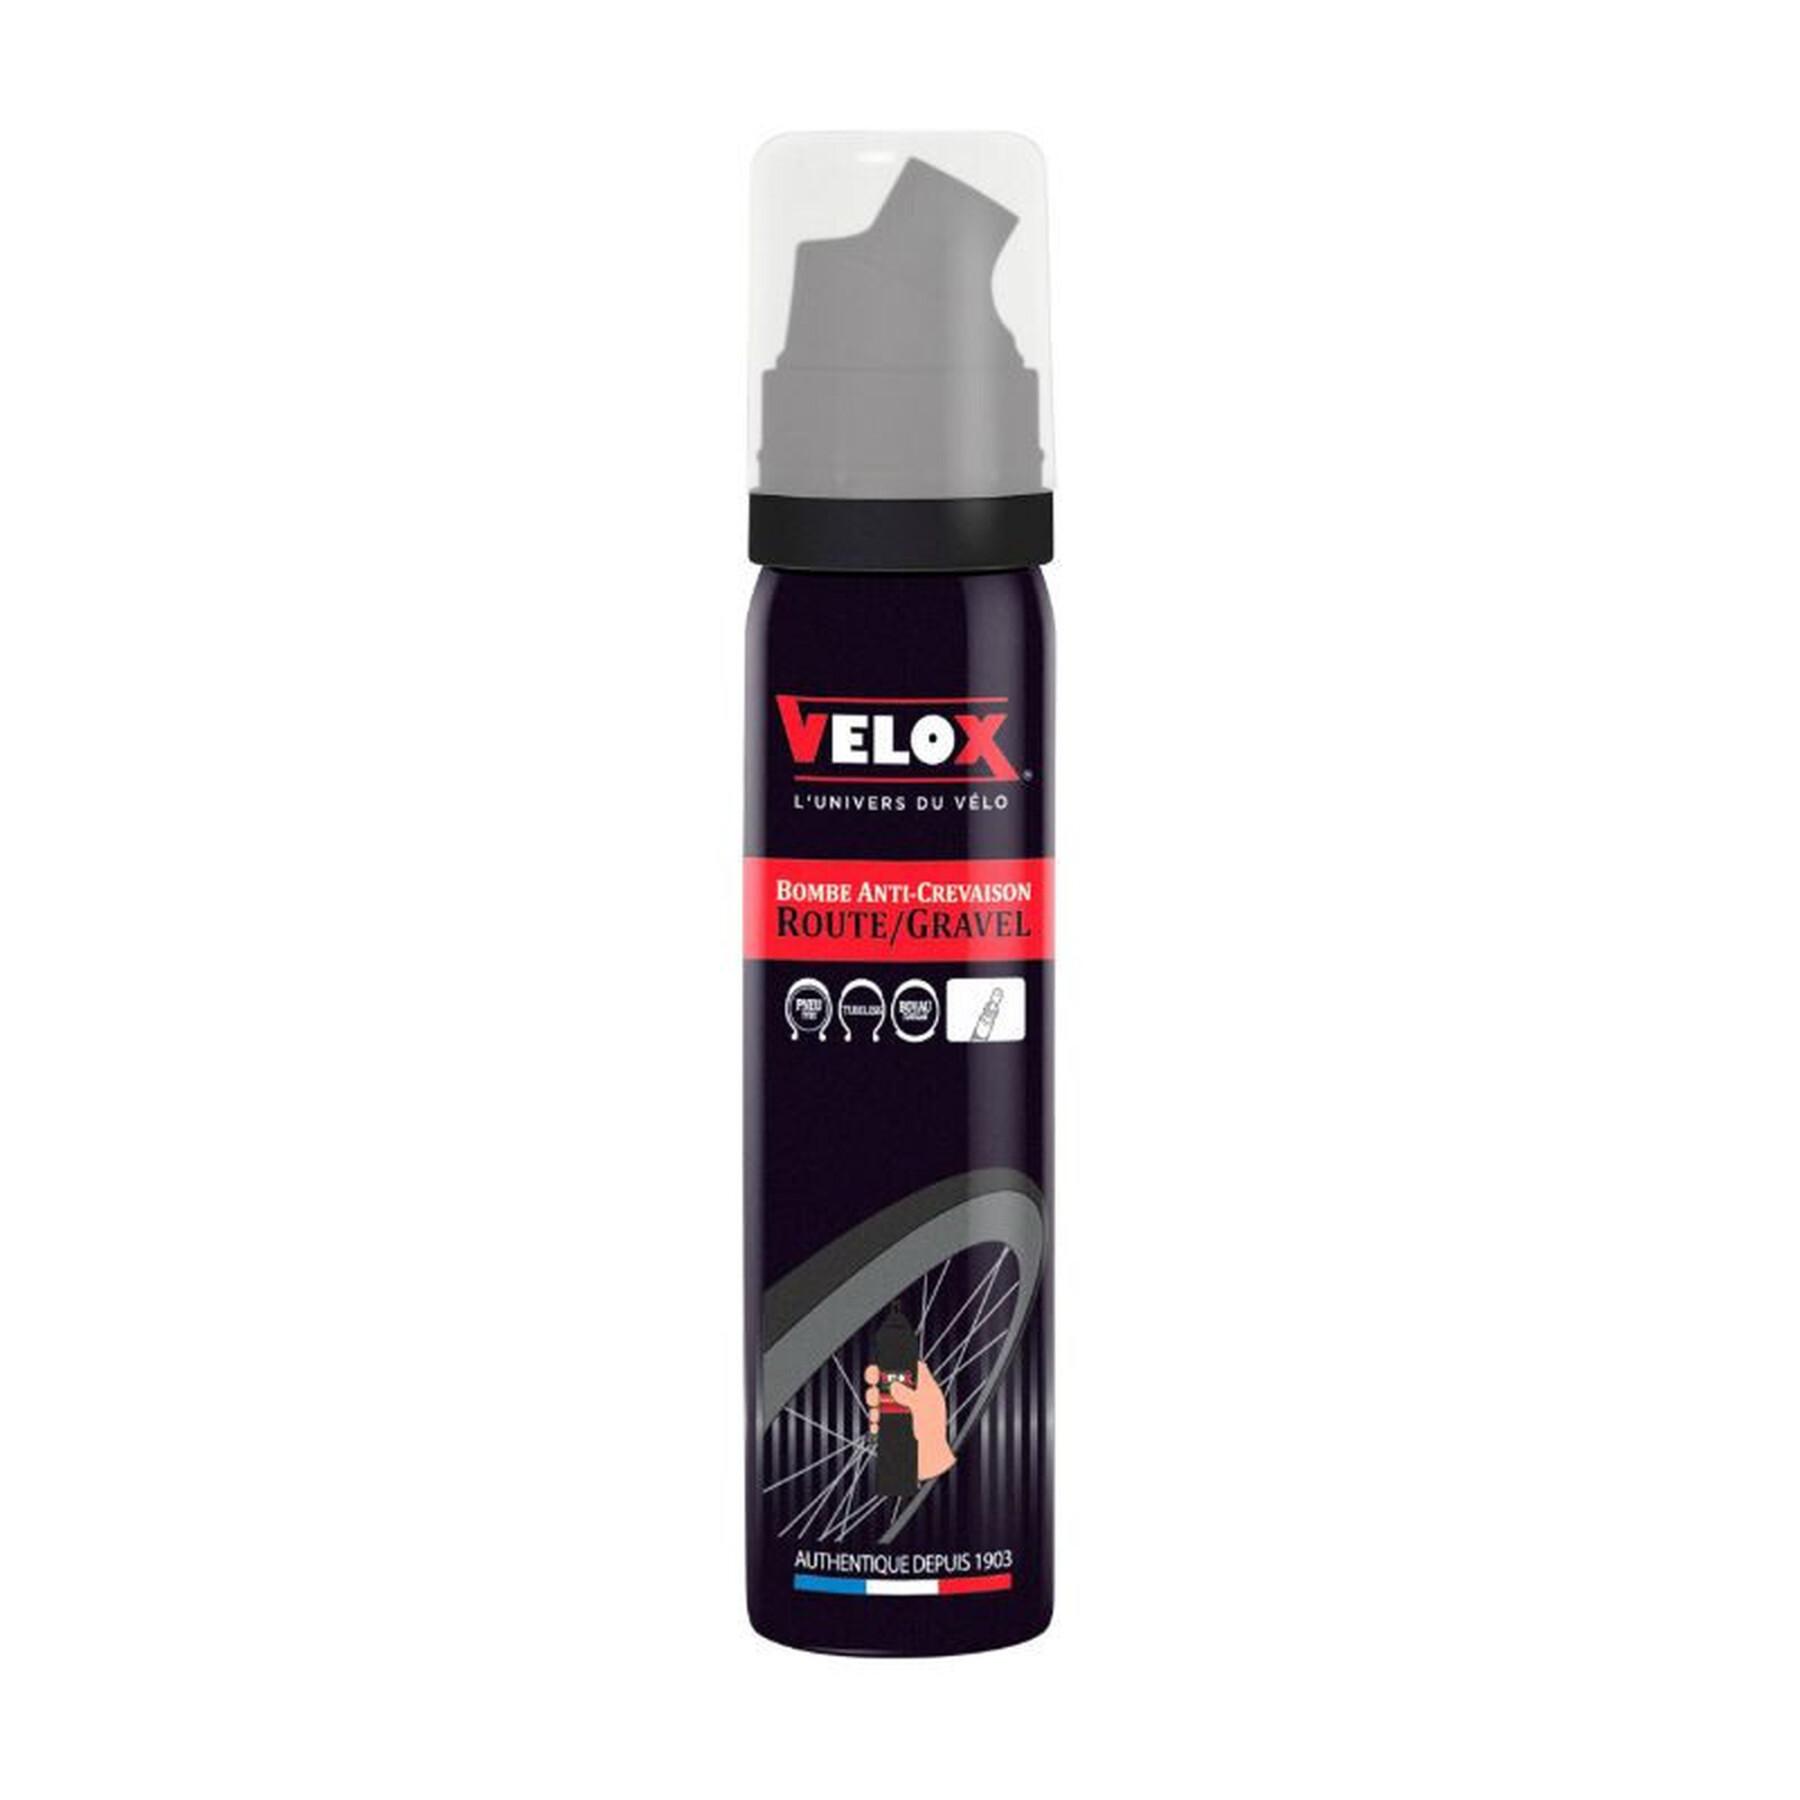 Spray antiforatura per pneumatici con attacco diretto alla valvola Velox Presta 75 ml